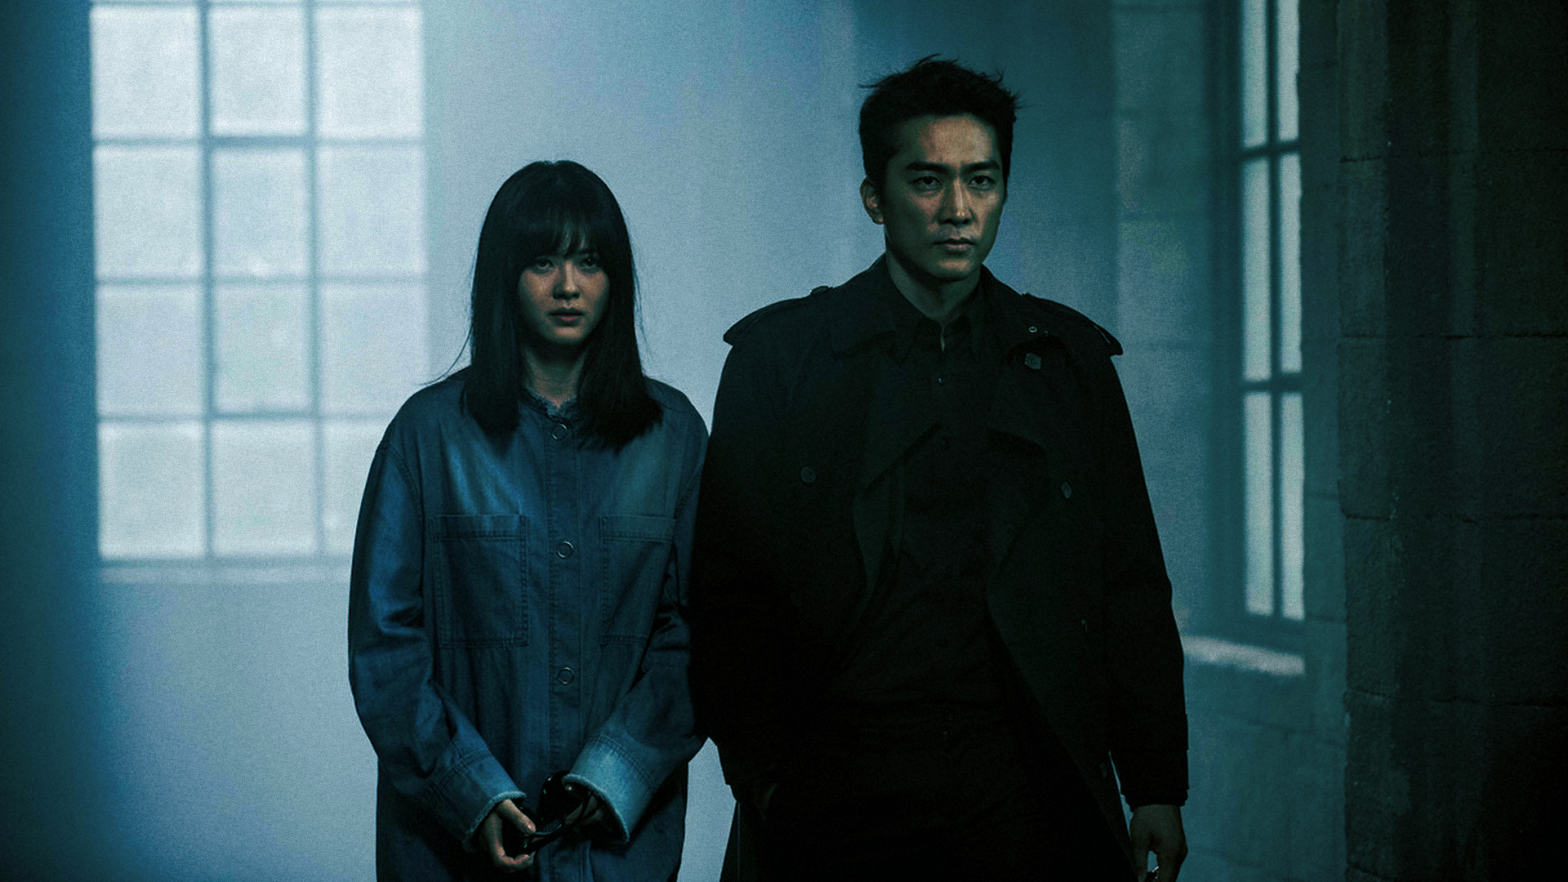 My Name (Netflix, 2021)  resumo, crítica e curiosidades sobre a série sul- coreana